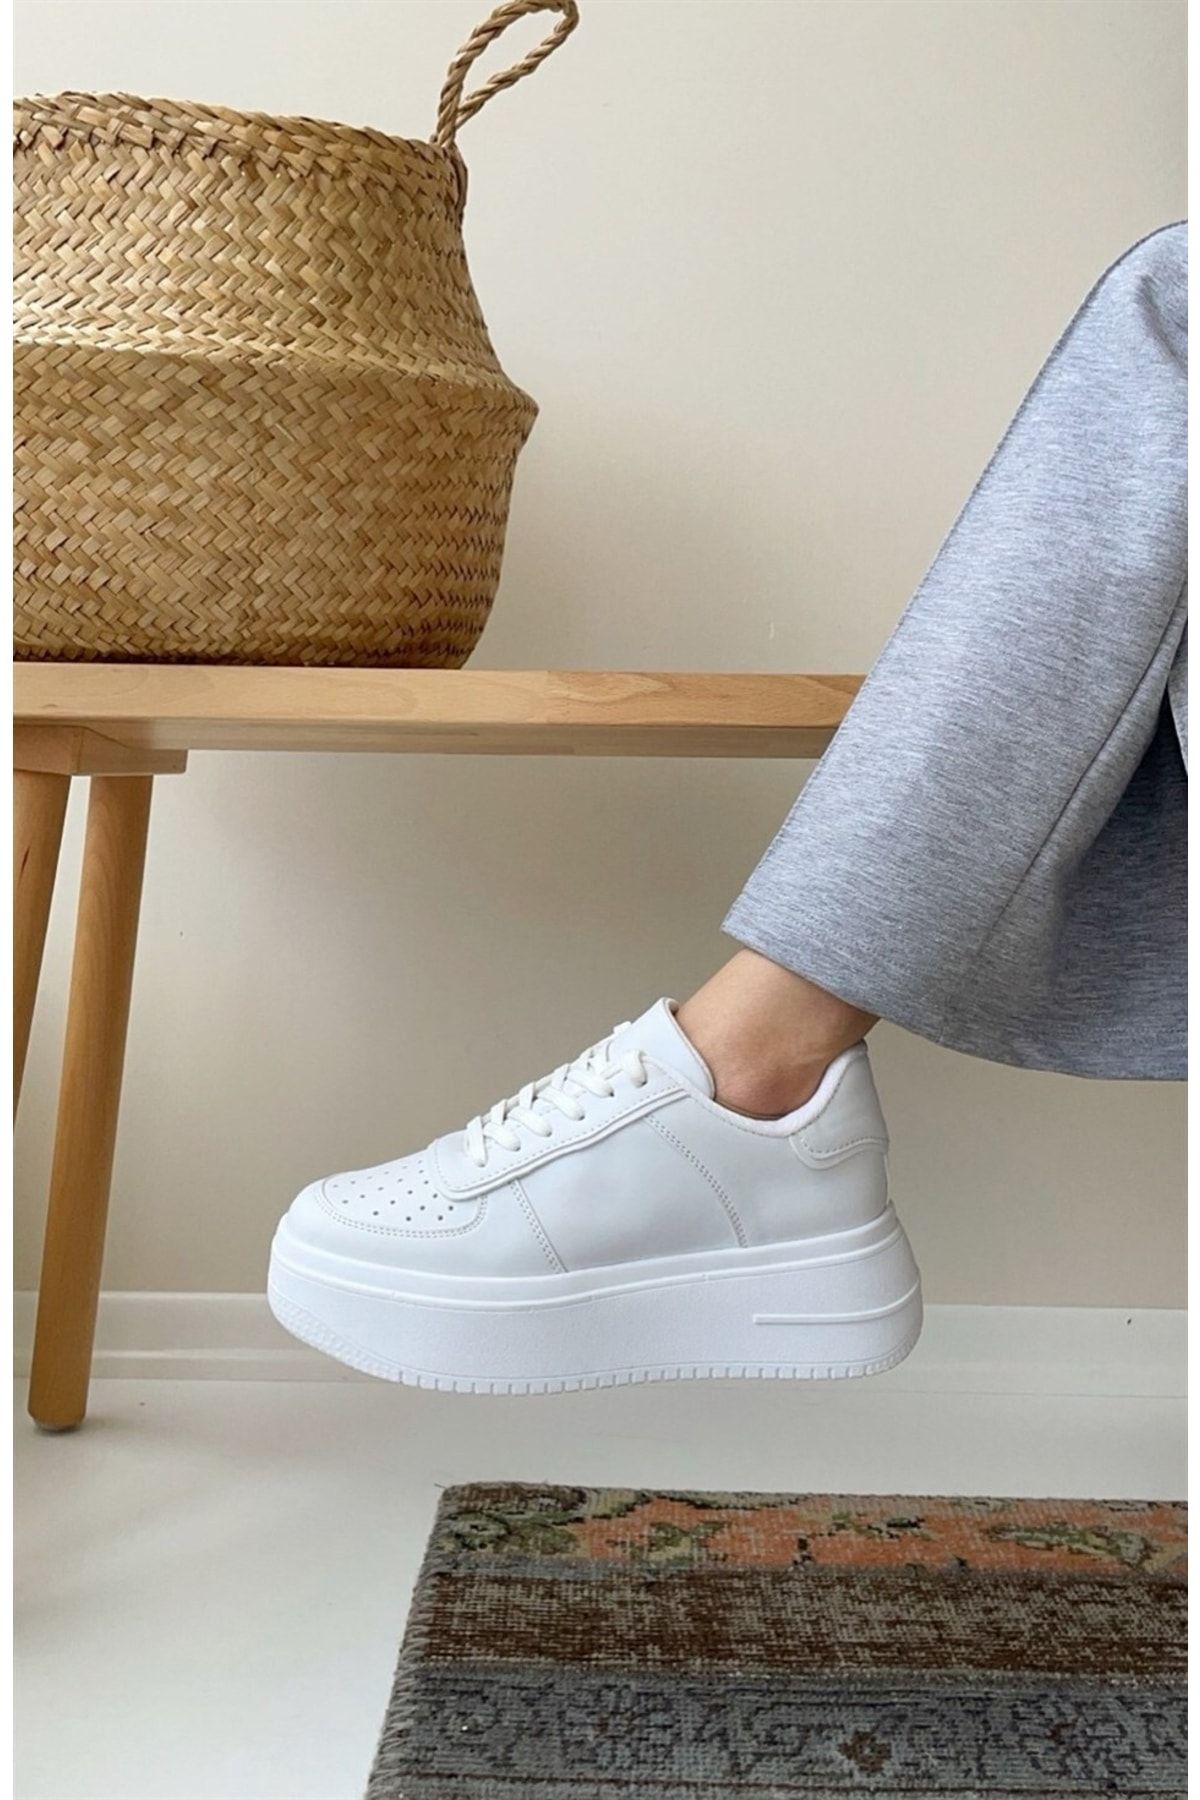 NAVYSIDE Kadın Beyaz Sneaker Yüksek Tabanlı-5 Cm-spor Ayakkabı